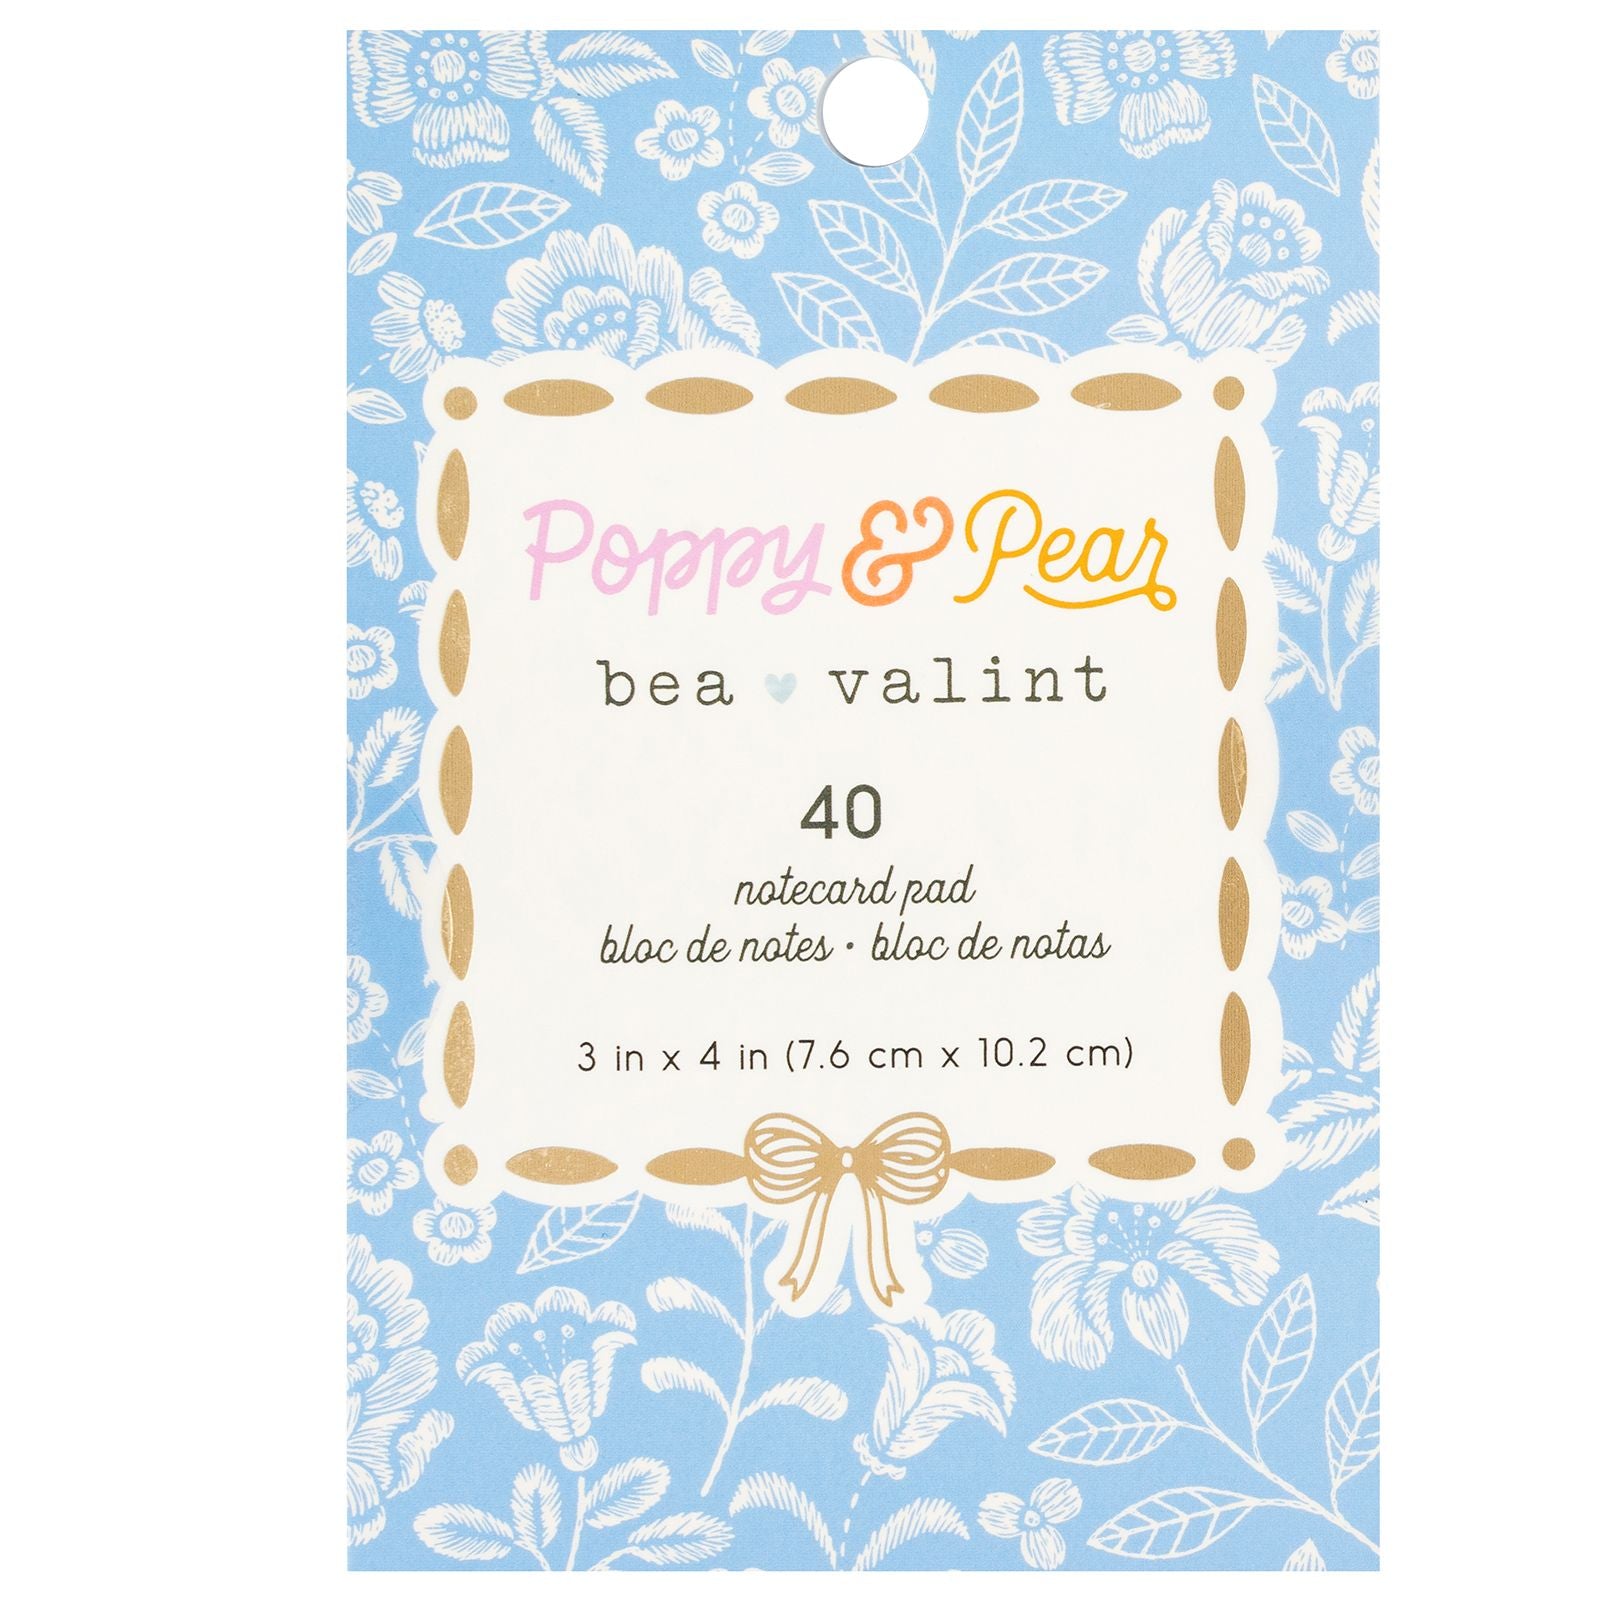 Poppy & Pear Notecard Pad / Block de Notas Bea Valint